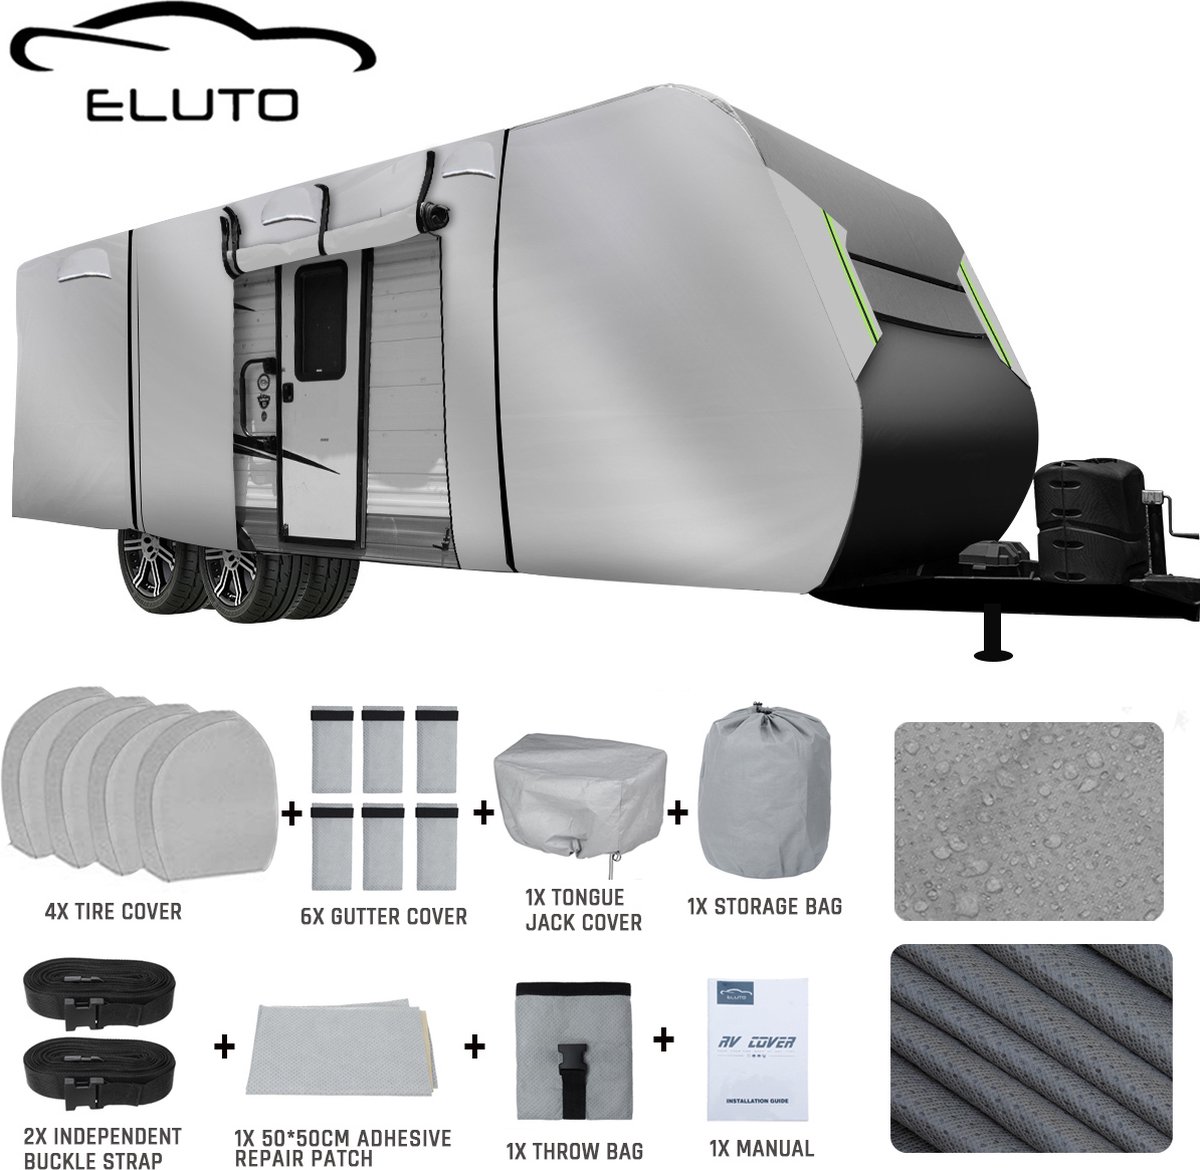 ELUTO Caravanhoes 823*267*274 CM - Waterdicht, UV-bescherming, sneeuwbestendig - Grijs